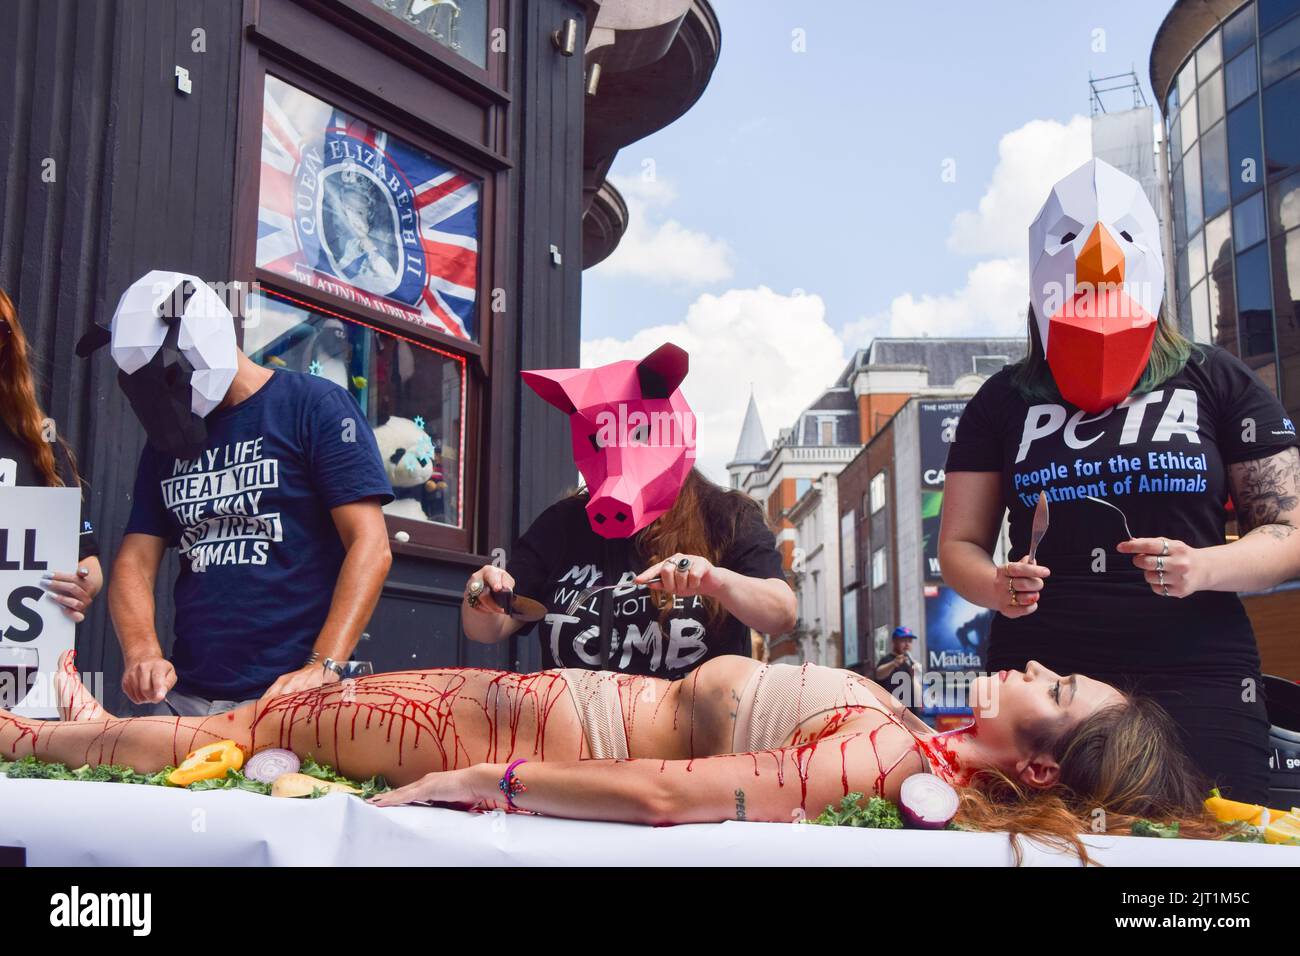 London, Großbritannien. 27. August 2022. PETA-Aktivisten (People for the Ethical Treatment of Animals), die Tiermasken tragen, "dinen" auf einen Aktivisten, der während des Protestes auf dem Leicester Square mit gefälschtem Blut bedeckt war. Die Aktion, die den Welttag für das Ende des Speziesismus markiert, ist Teil der laufenden Kampagne von PETA zur Beendigung des Speziesismus und zur Ermutigung der Menschen, vegan zu gehen. (Foto: Vuk Valcic/SOPA Images/Sipa USA) Quelle: SIPA USA/Alamy Live News Stockfoto